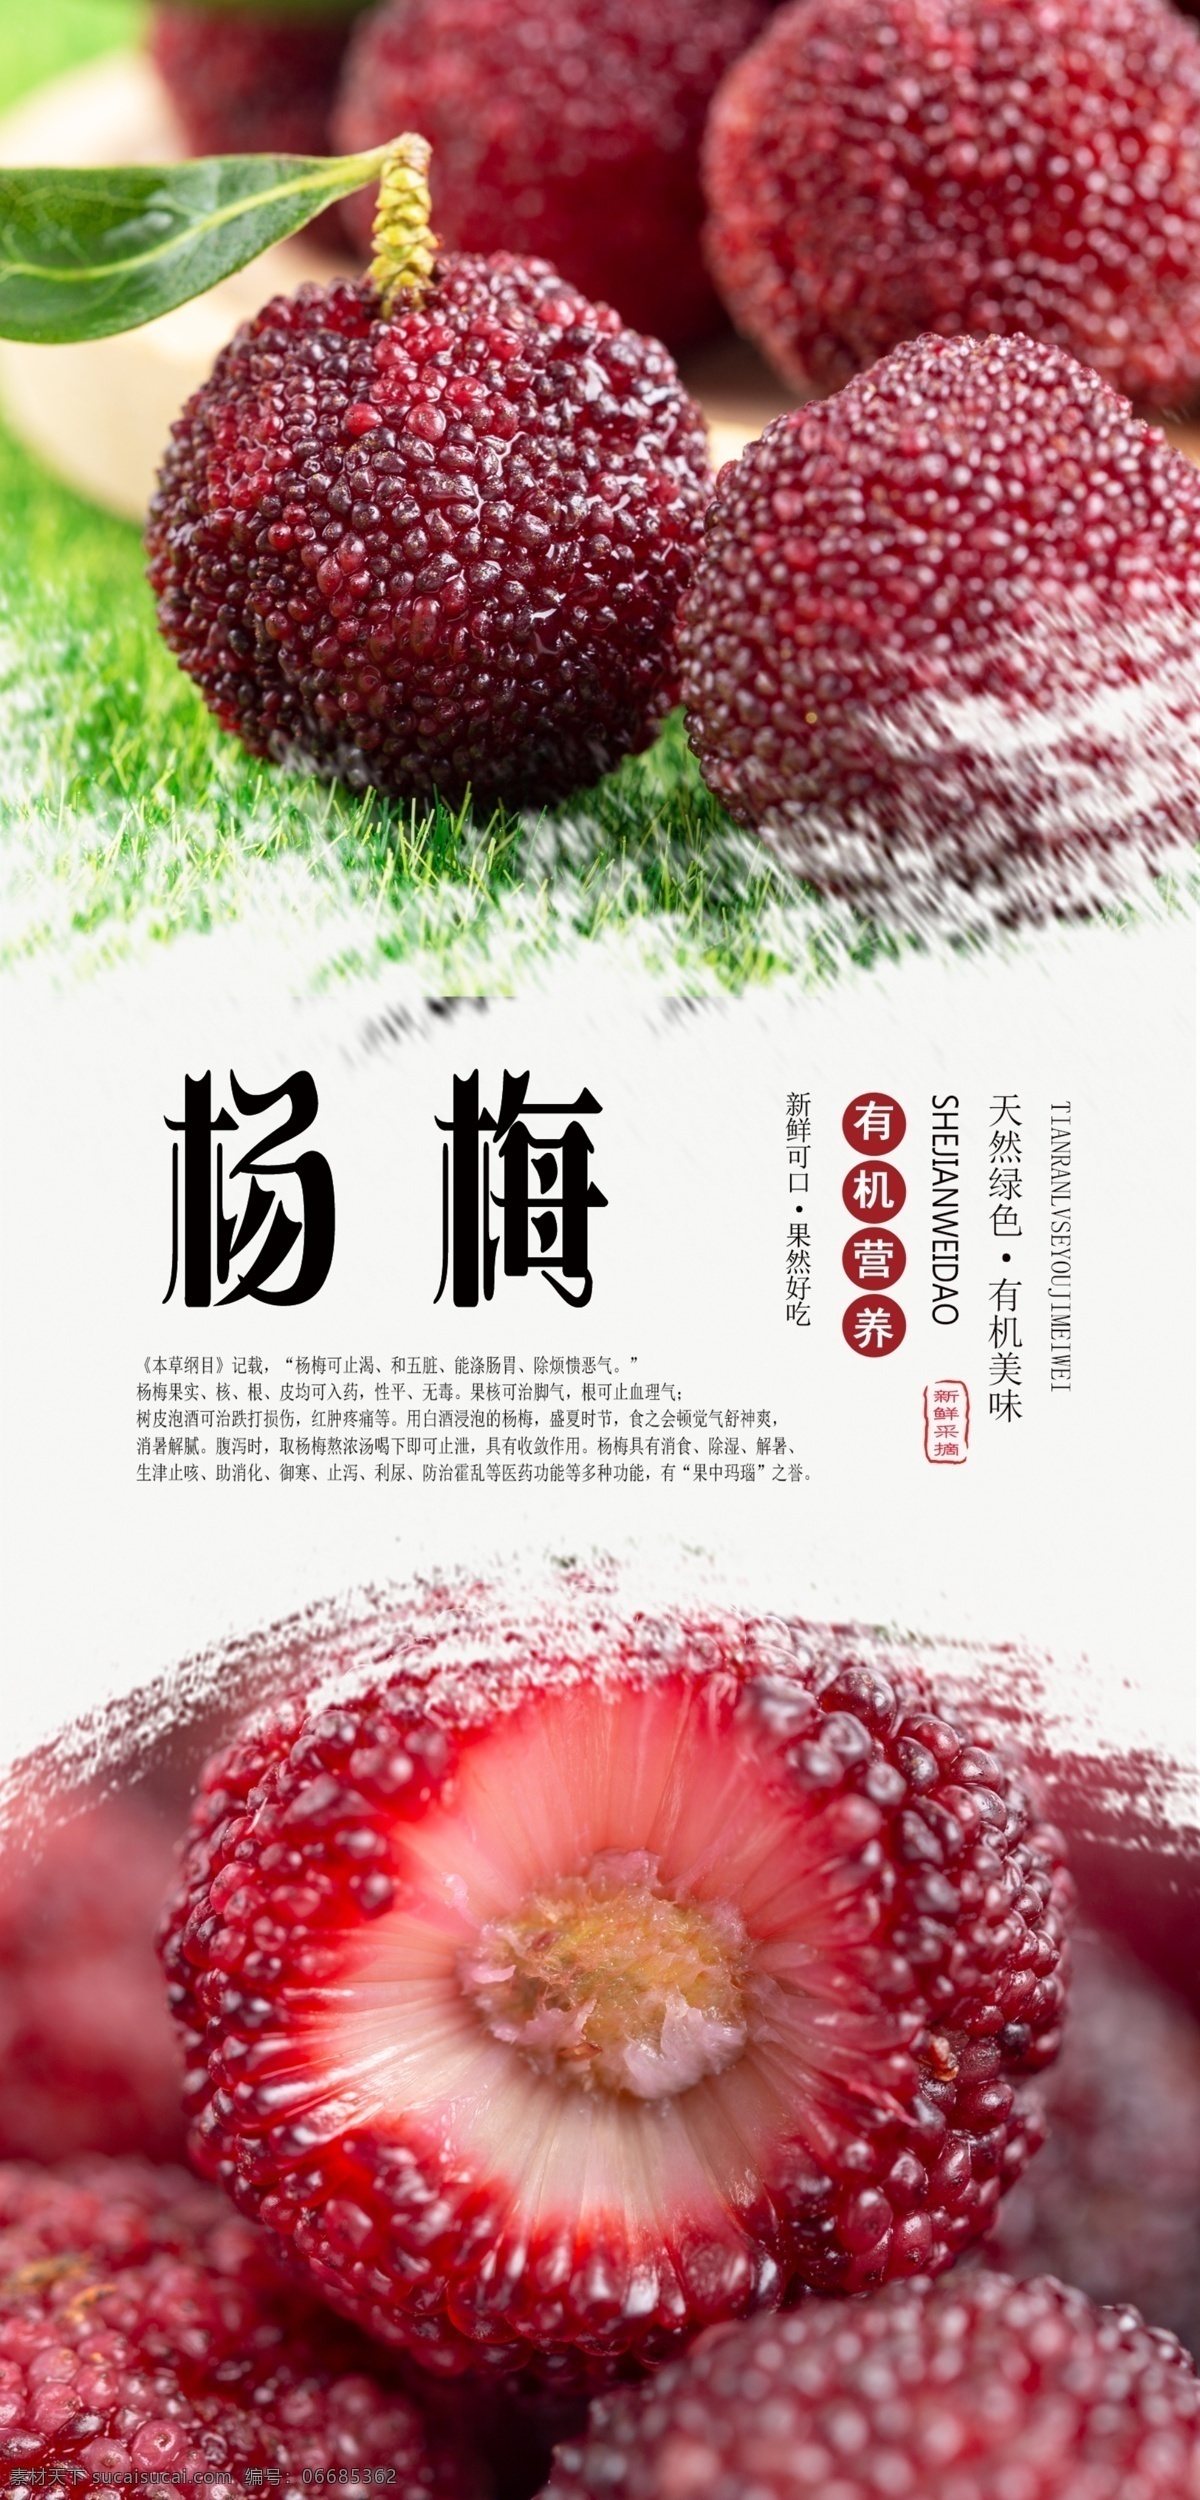 杨梅 分层 海报 水果 新鲜 绿色 有机 采摘 无公害 健康 好吃